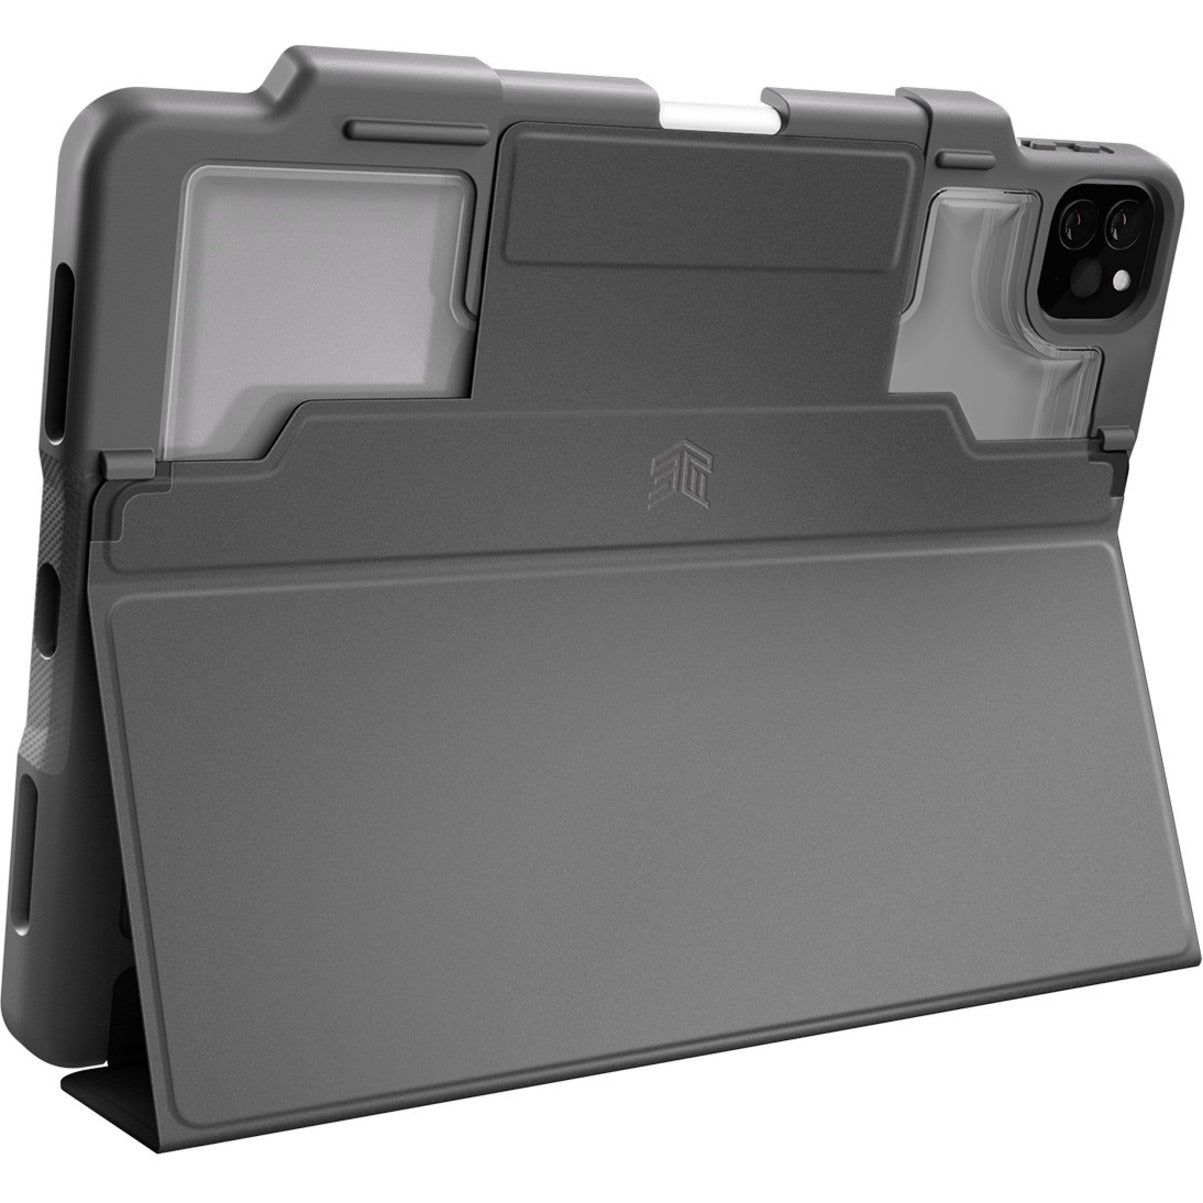 STM Goods STM-222-334KZ-01 DUX PLUS iPad Pro Models With Apple Pencil Storage (2021) Noir 11"